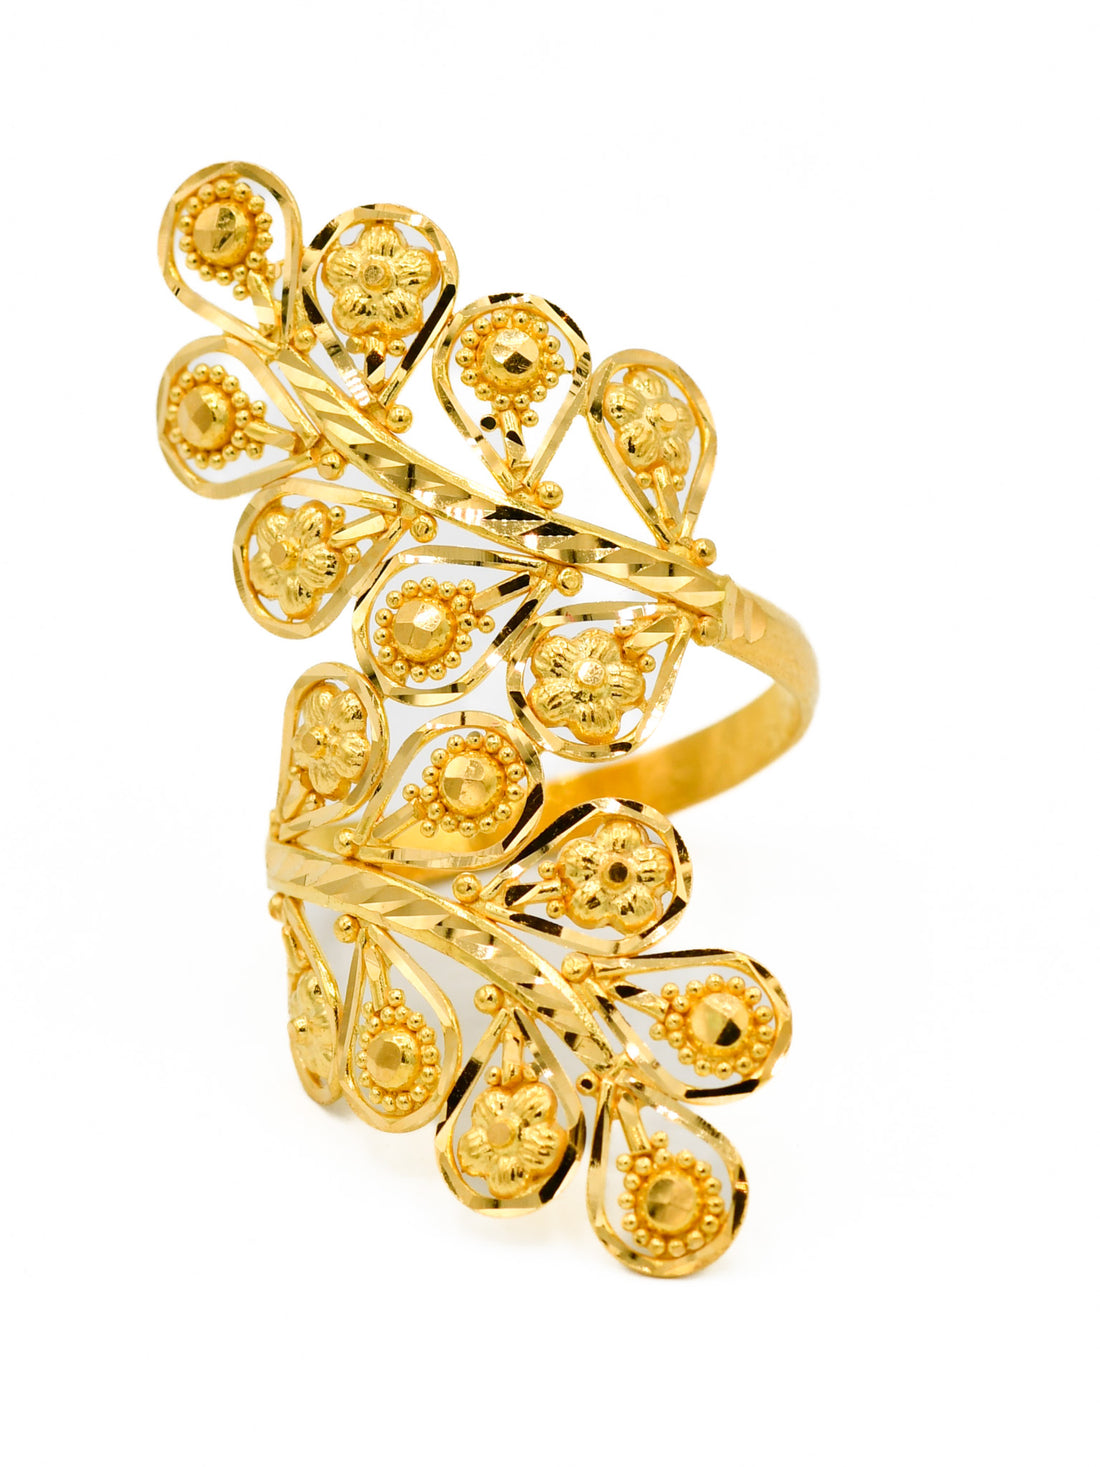 22ct Gold Ladies Ring